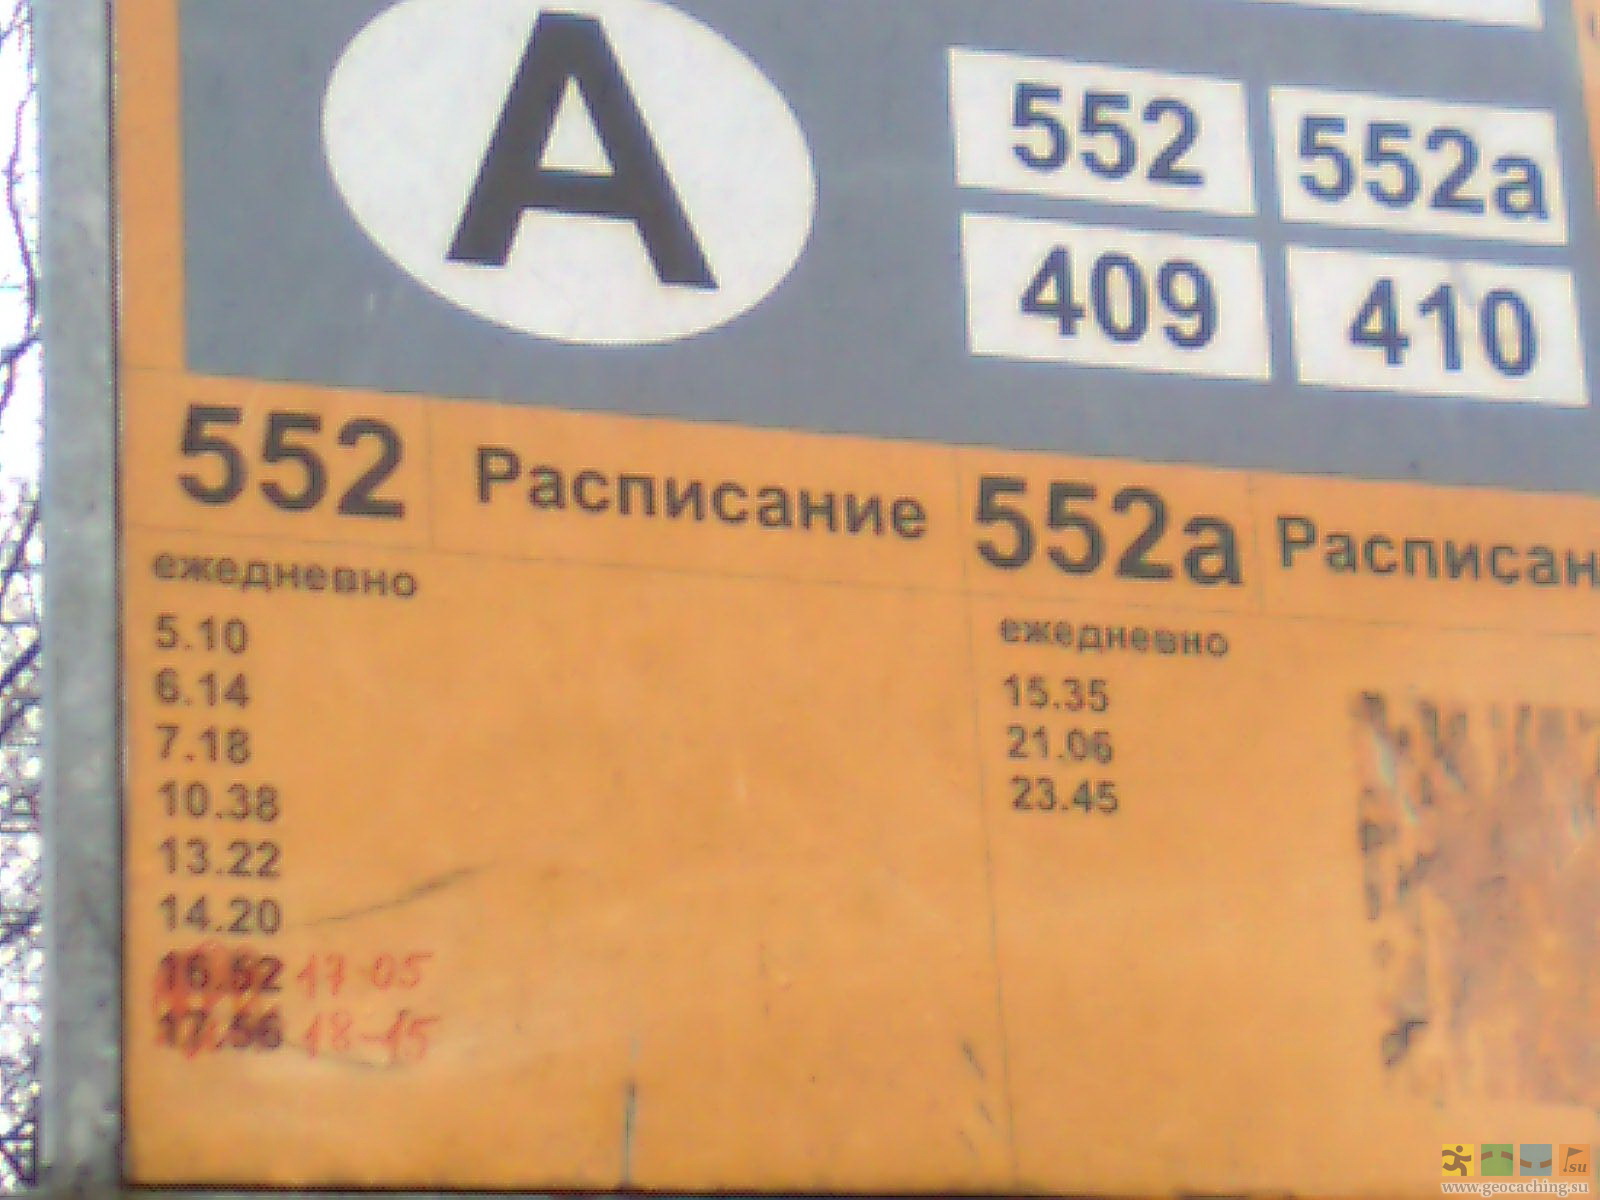 552 Автобус расписание. 552 Автобус расписание Зеленогорск. Маршрут 410 (Зеленогорск — Первомайское). Расписание автобусов 213 от 21 км